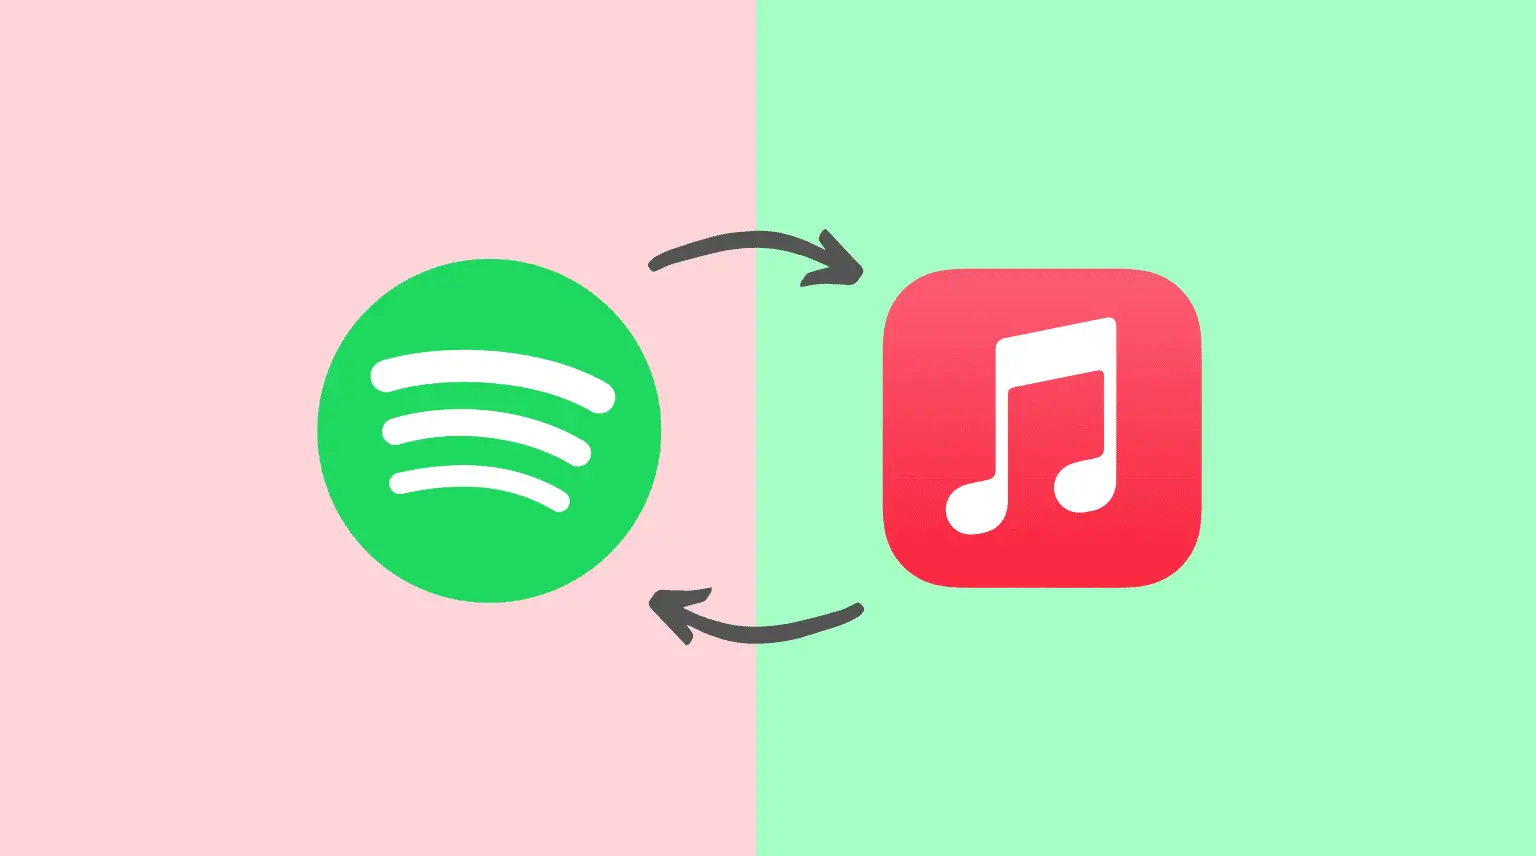 Loghi Spotify e Apple Music su sfondo chiaro con due frecce che mostrano il trasferimento di brani tra di loro